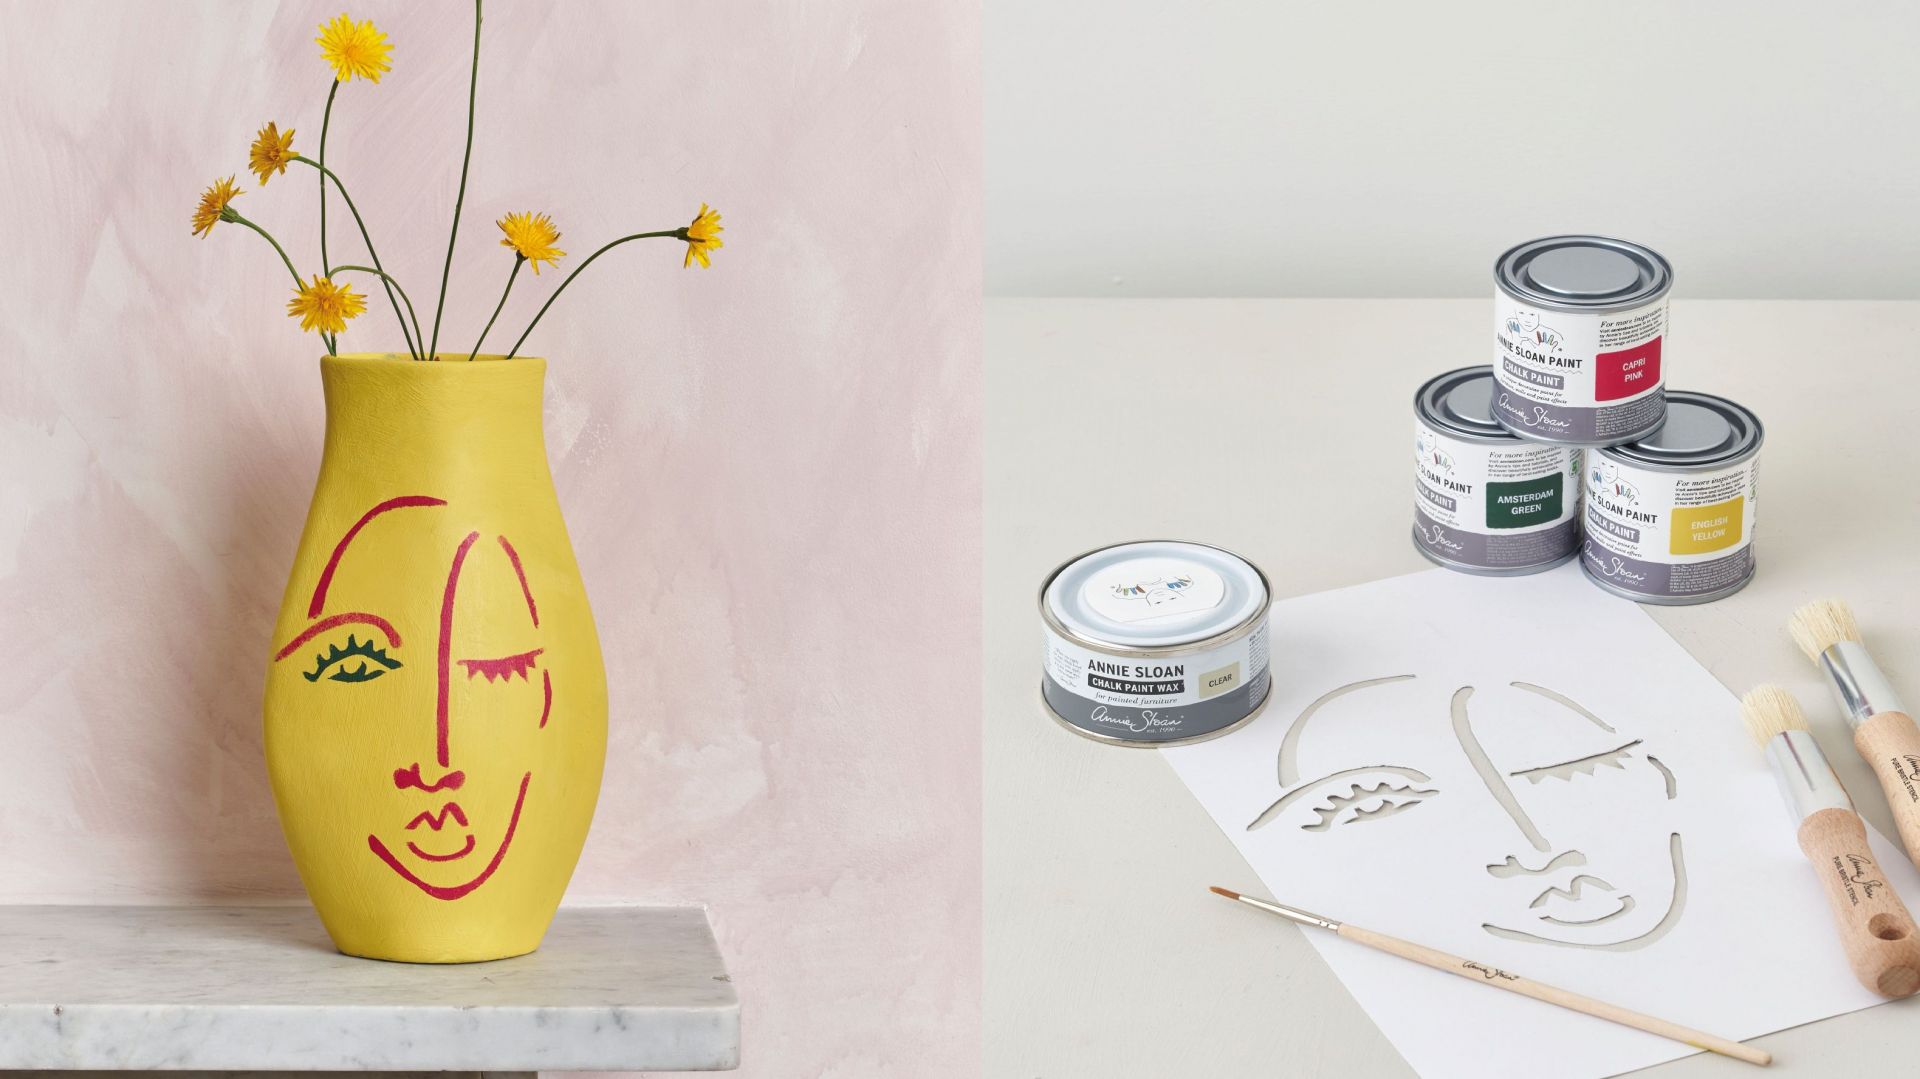 Artystyczny wazon: zrób go sam. Nowy projekt DIY od Annie Sloan